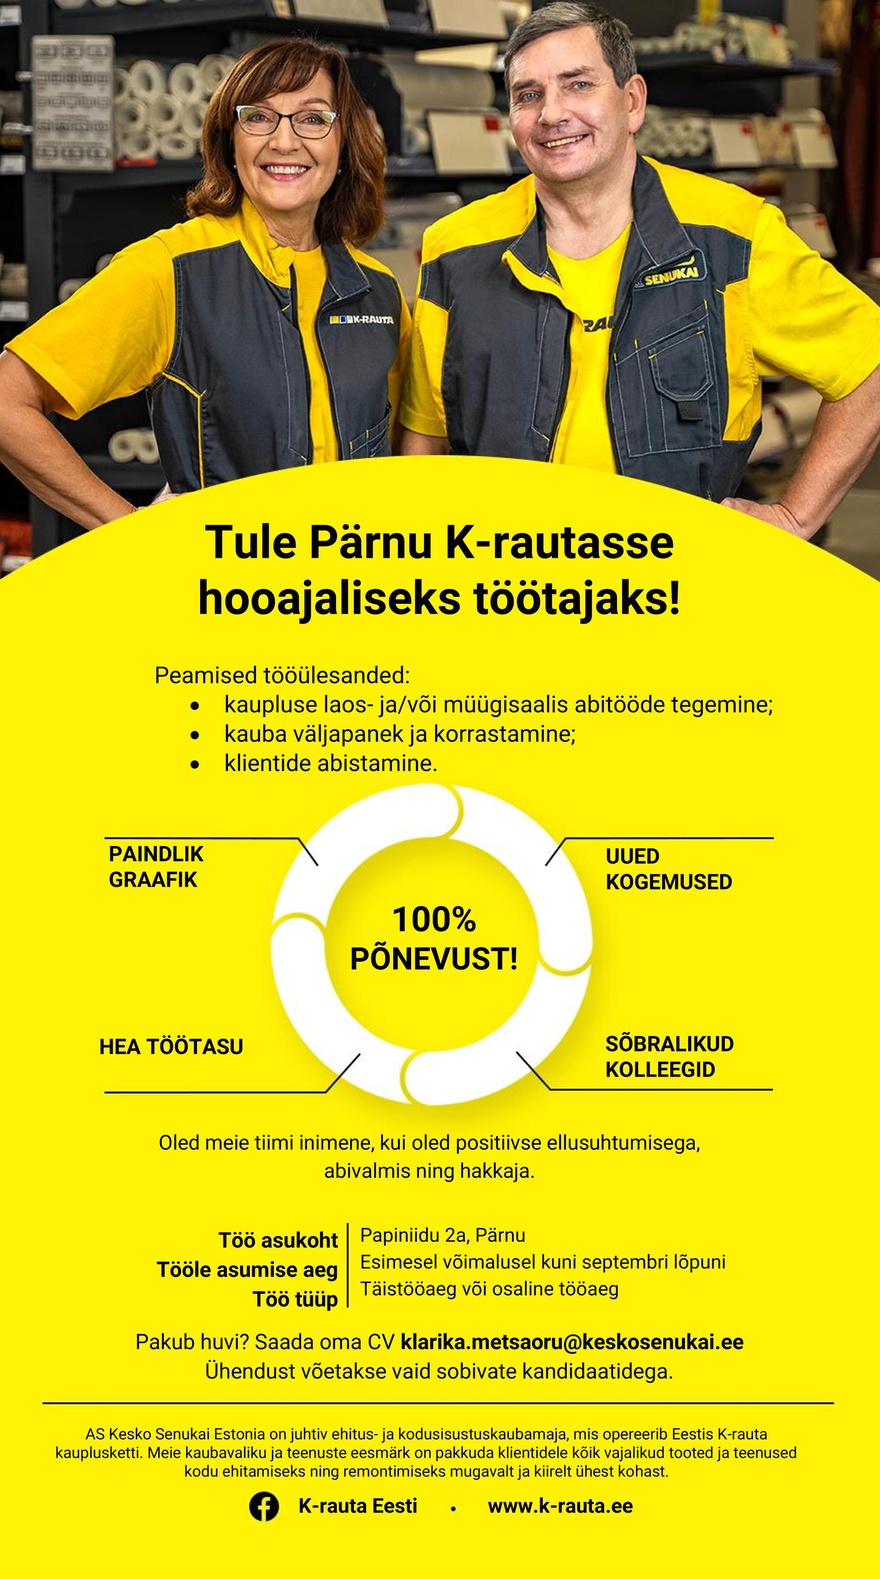 Kesko Senukai Estonia AS Otsime hooajalisi töötajaid Pärnu K-rauta kauplusesse